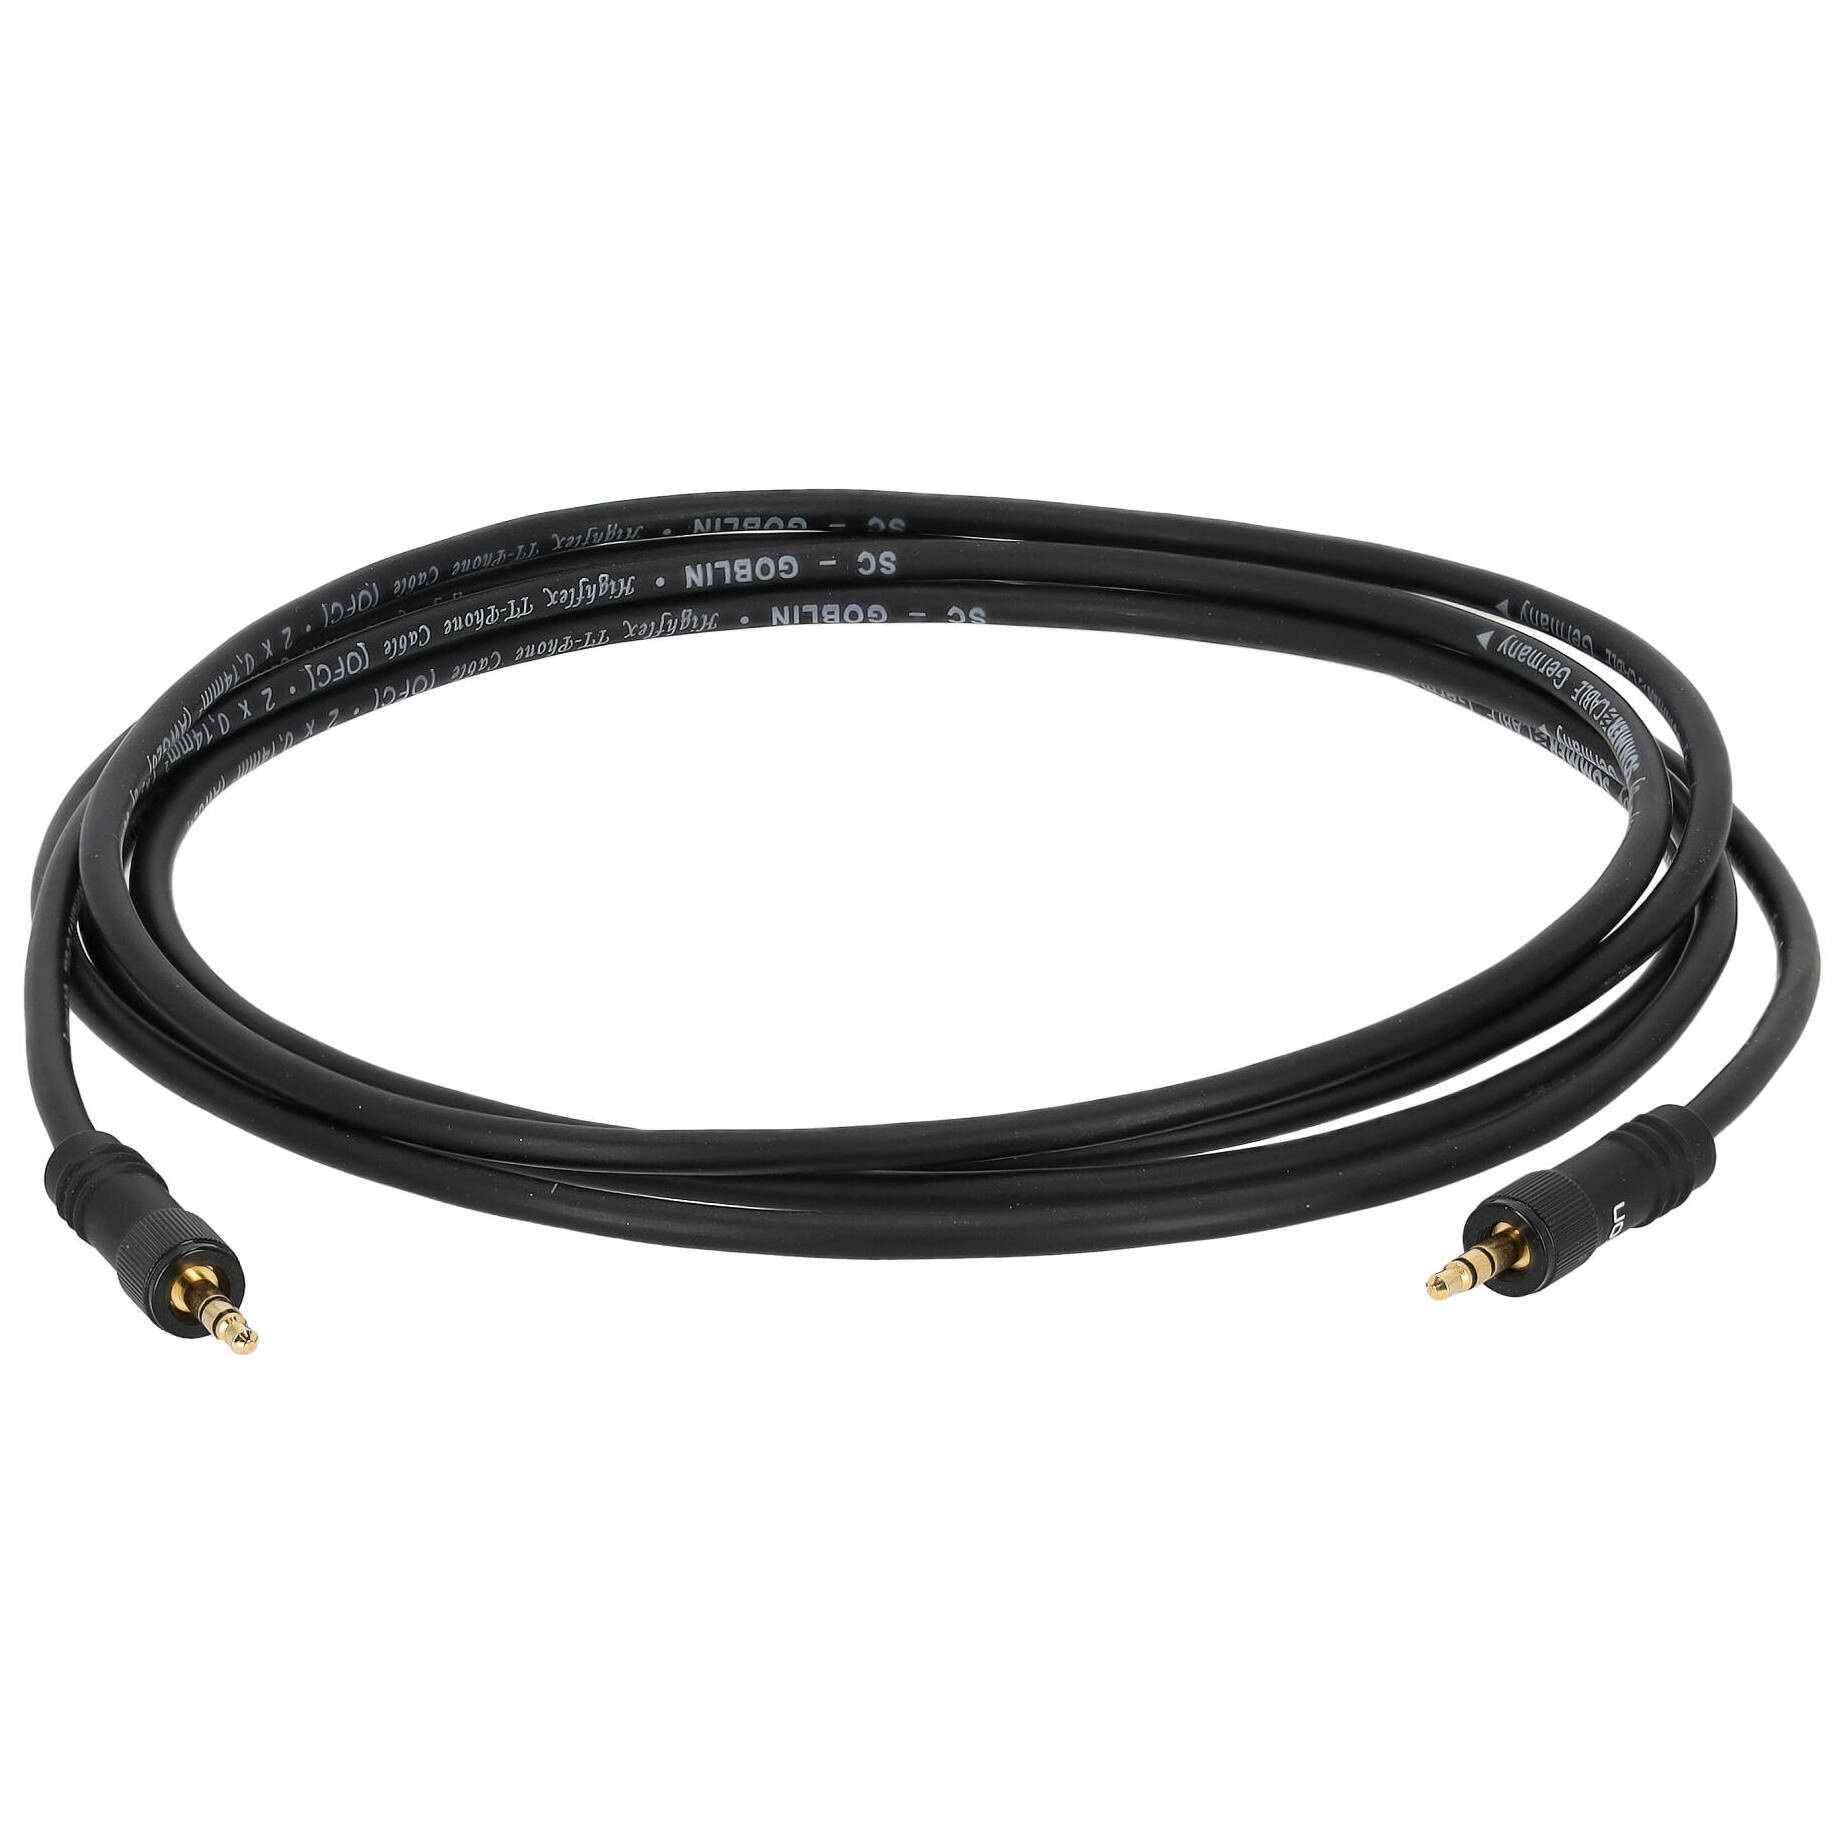 Sommer Cable GOCU-0250 Mini Klinke Stereo - Mini Klinke Stereo 2,5 Meter 1